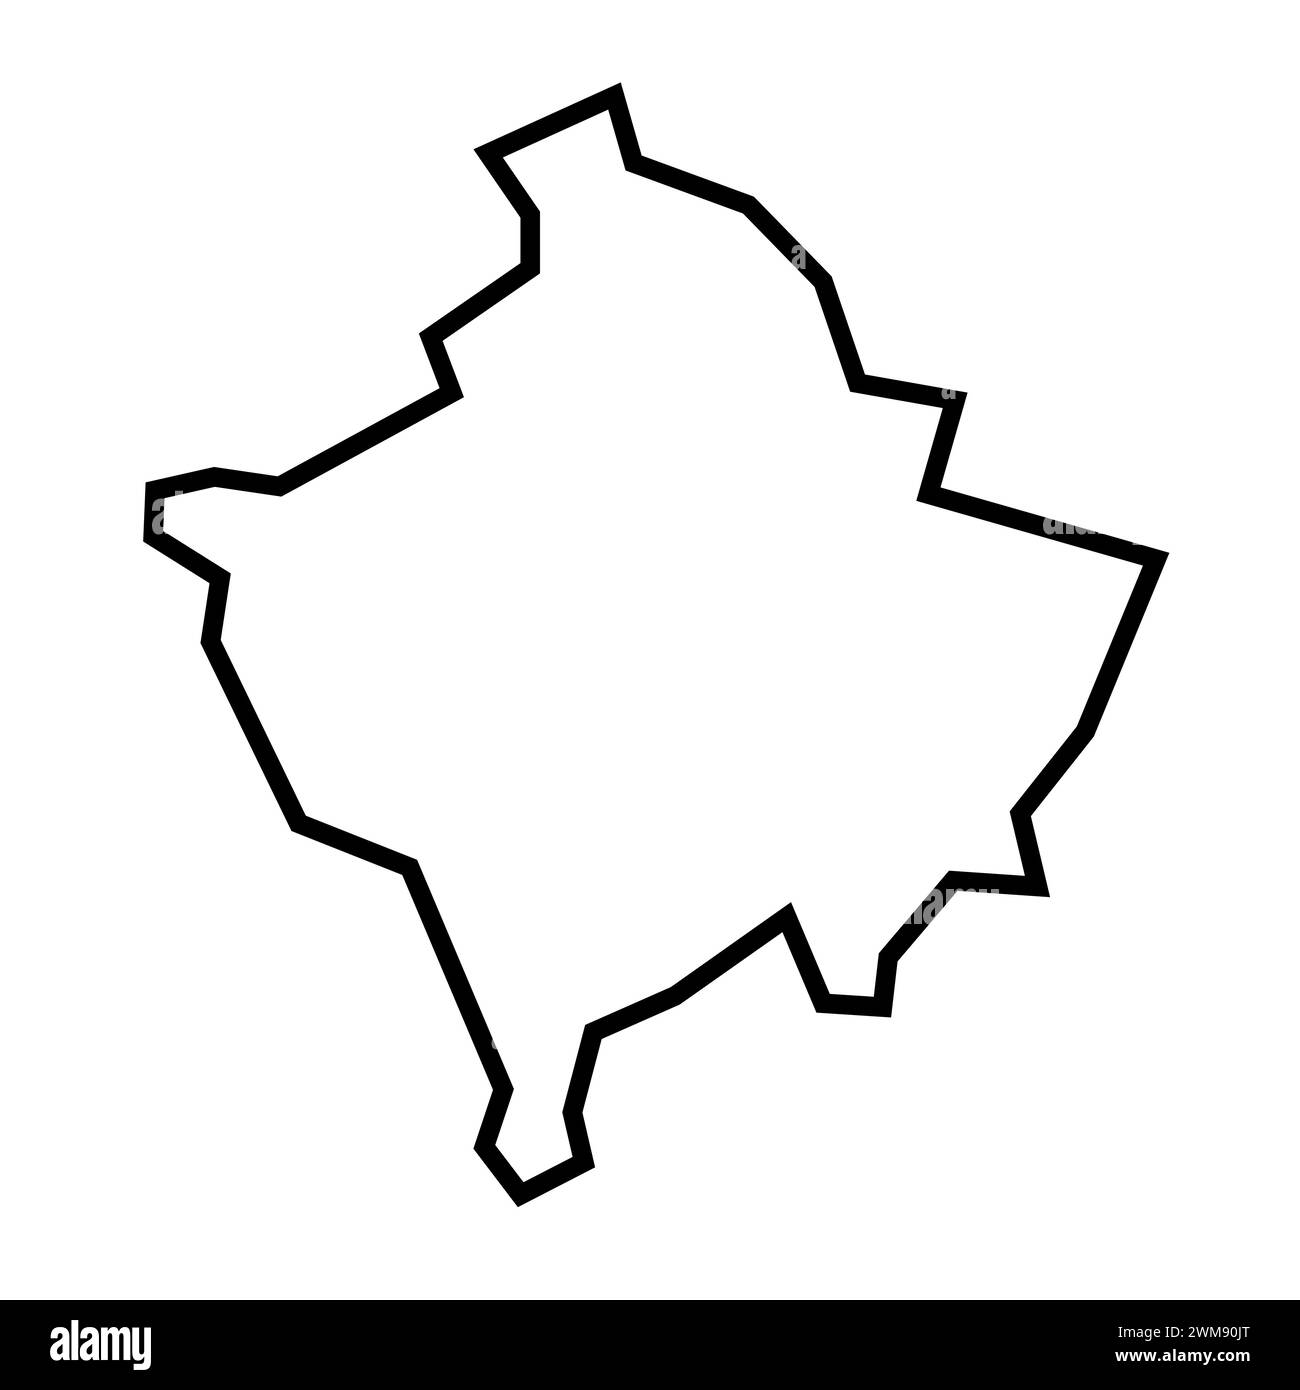 Silhouette nera spessa del paese del Kosovo. Mappa semplificata. Icona vettoriale isolata su sfondo bianco. Illustrazione Vettoriale